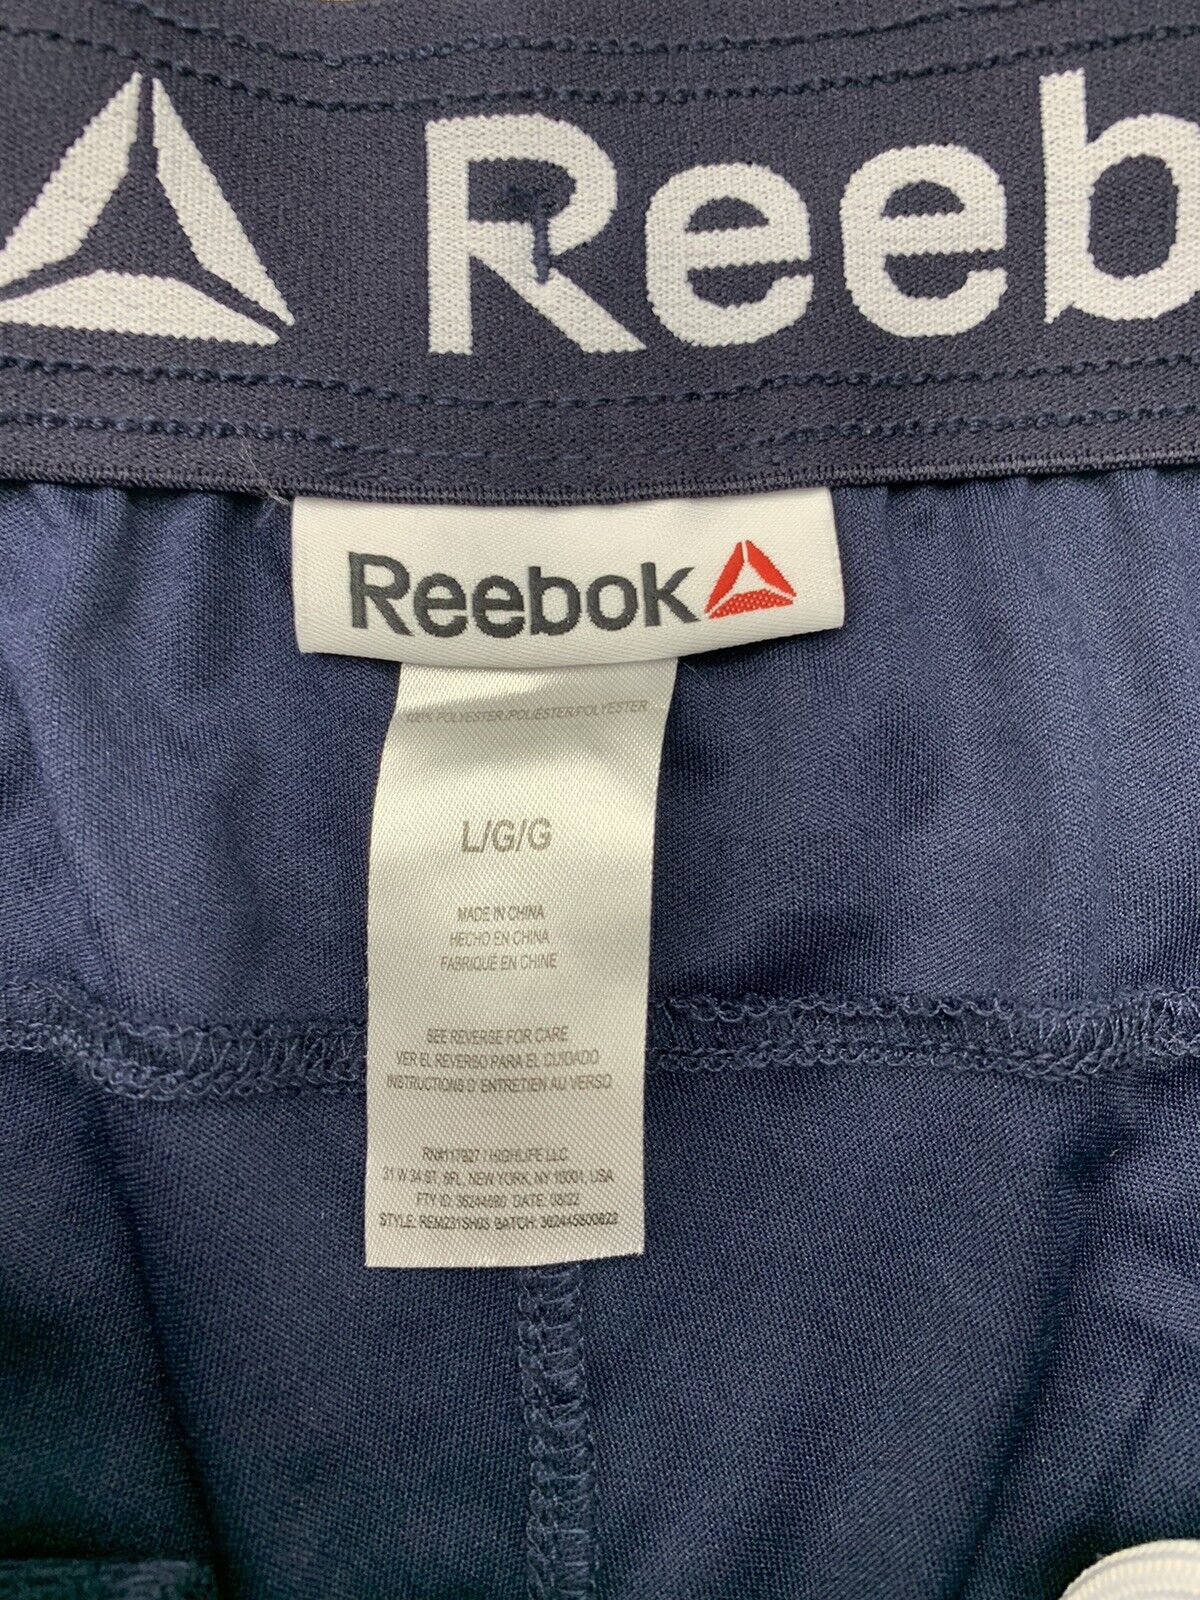 Reebok Mens Dark Athletic Shorts Size Large - beyond exchange